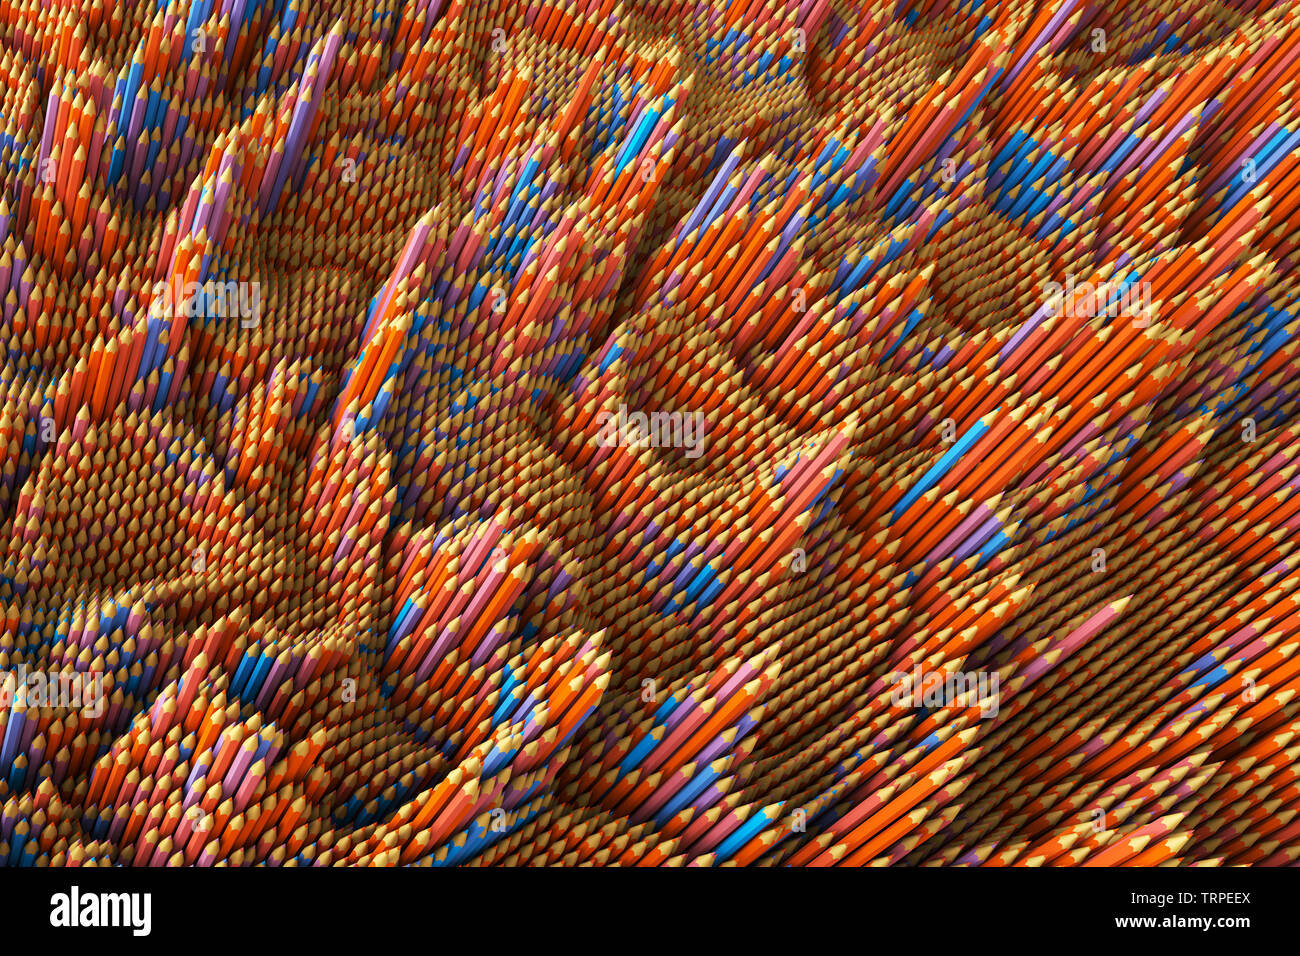 3D-Illustration - kreative Hintergrund der Buntstifte mit unterschiedlicher Höhe. Rot und Blau Muster. Farbgestaltung der Bleistift Muster Zusammensetzung. Stockfoto